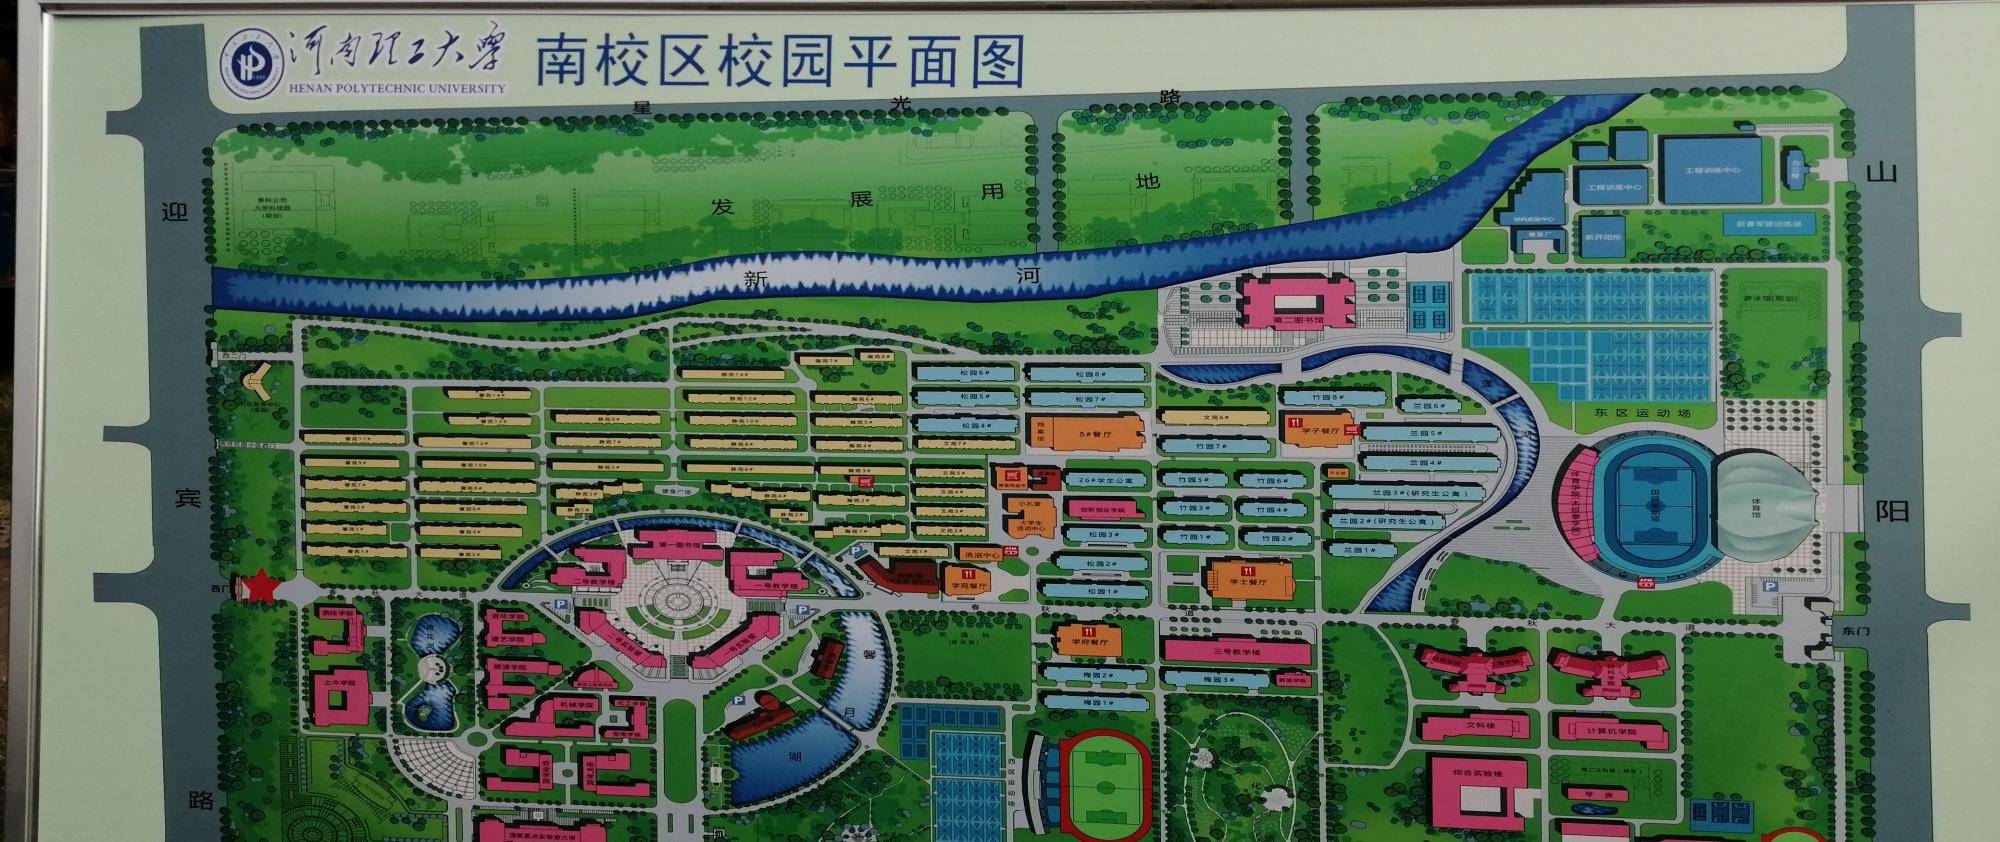 河南理工大学新生9月14号开始新生报到,新校园平面图出炉